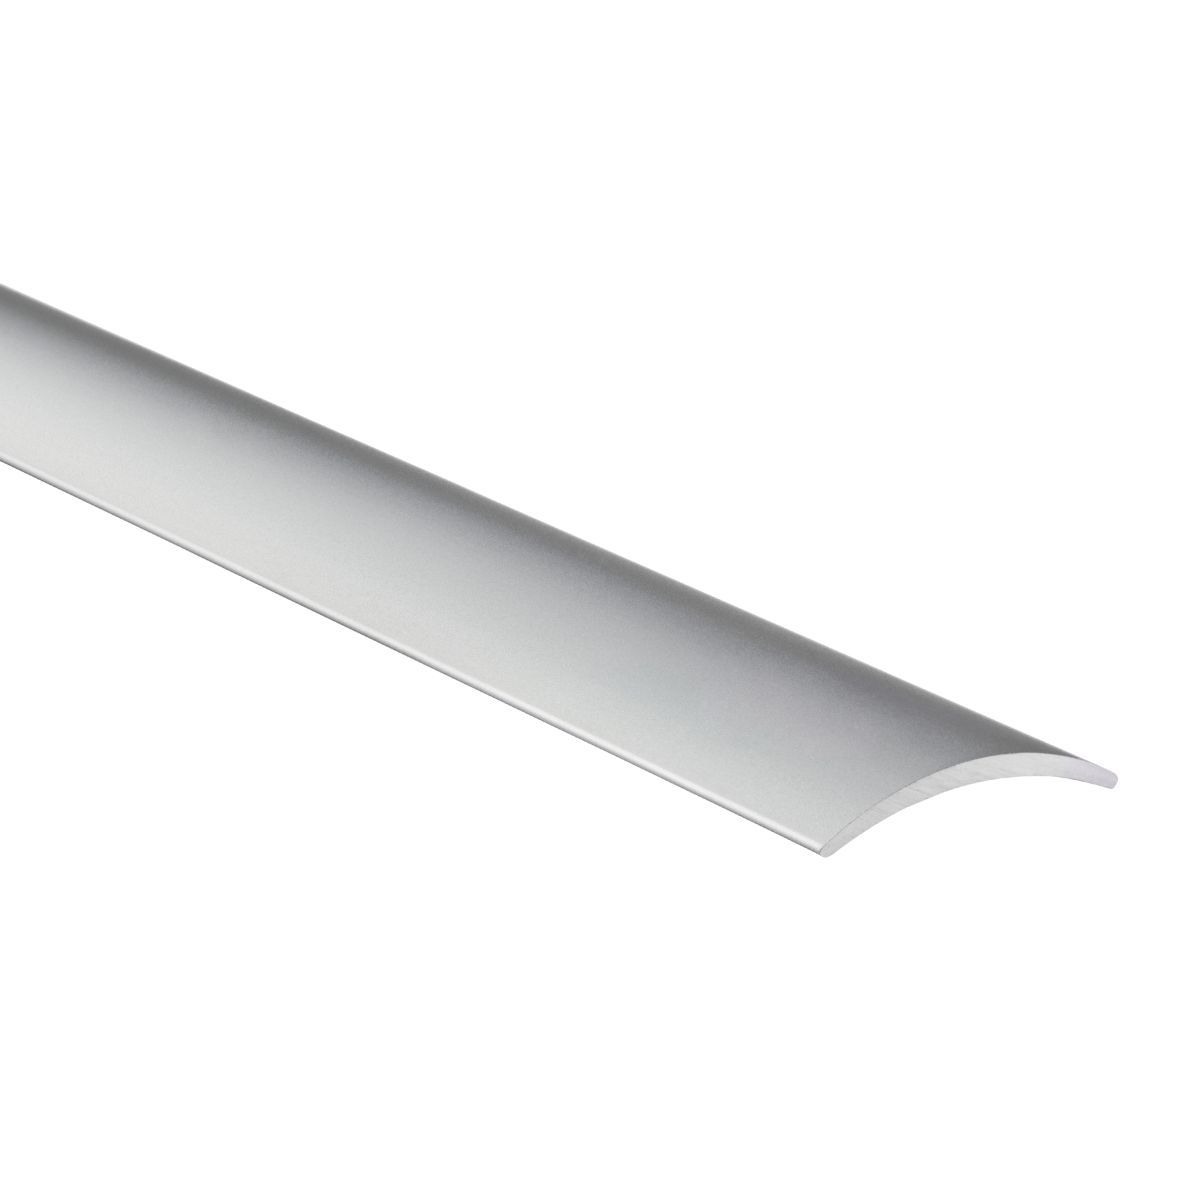 Alfer perfil de transición de aluminio arqueado autoadhesivo 30-40 x 5 mm